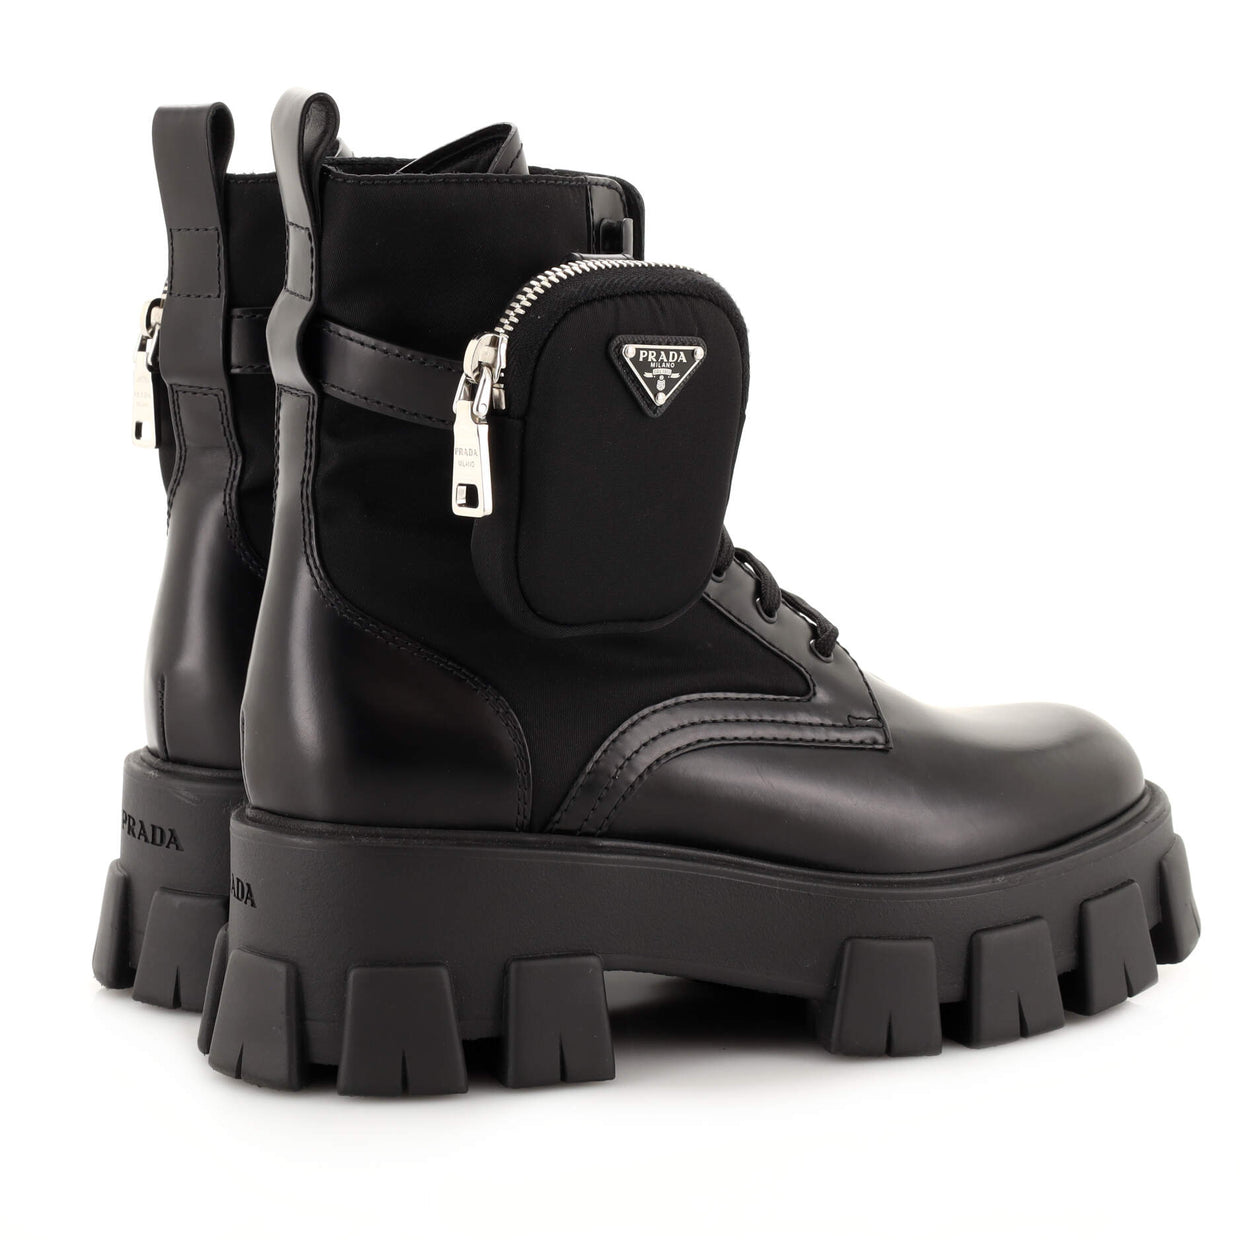 Prada Monolith Combat Boots Leather and Nylon Black 2019441